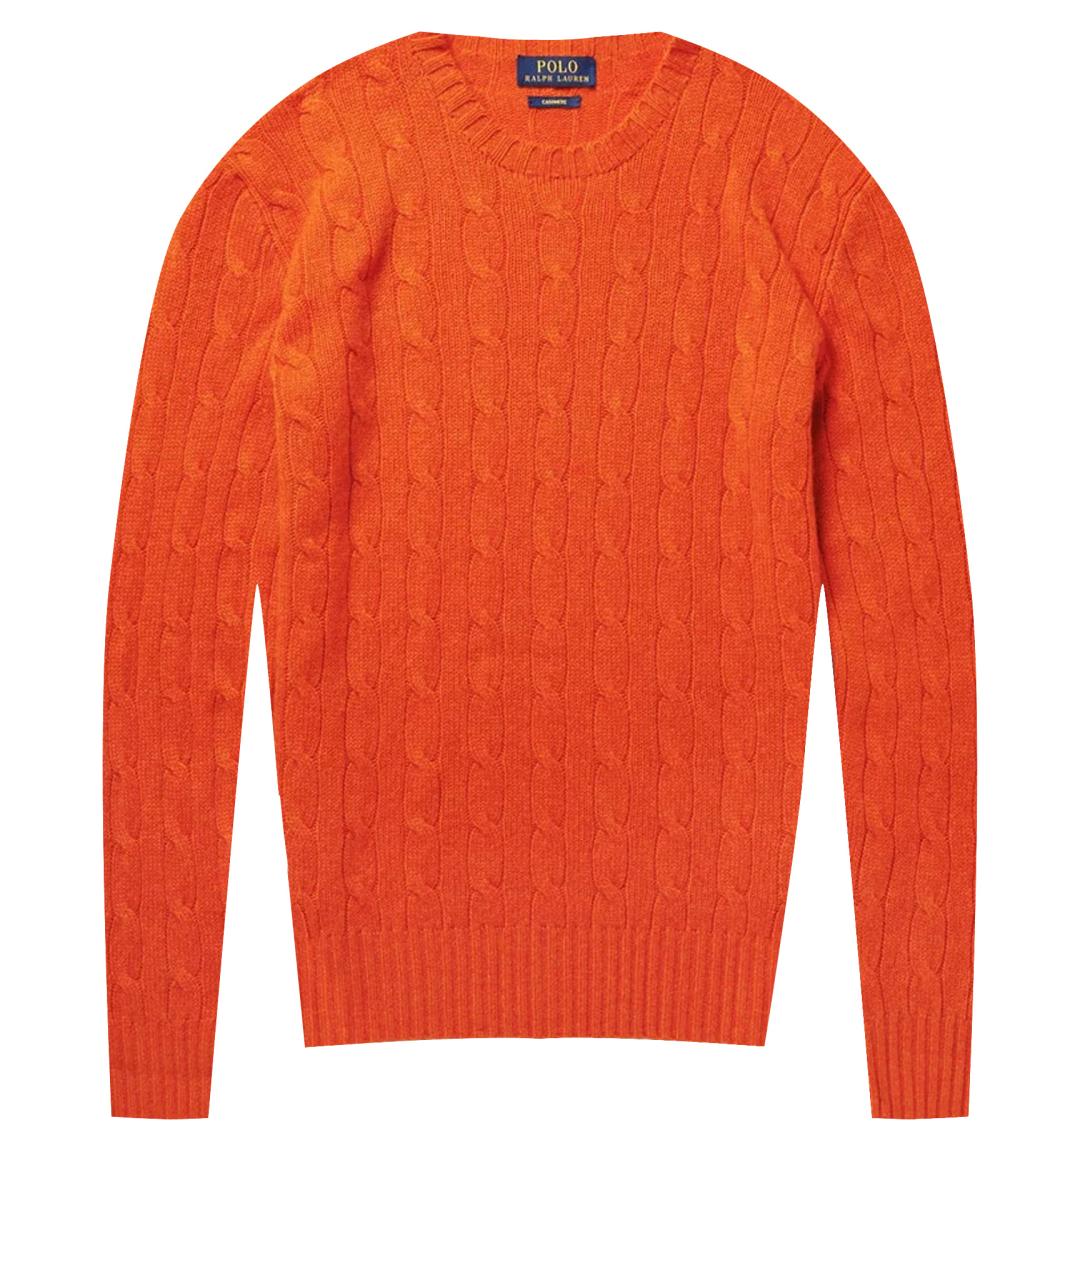 POLO RALPH LAUREN Оранжевый кашемировый джемпер / свитер, фото 5